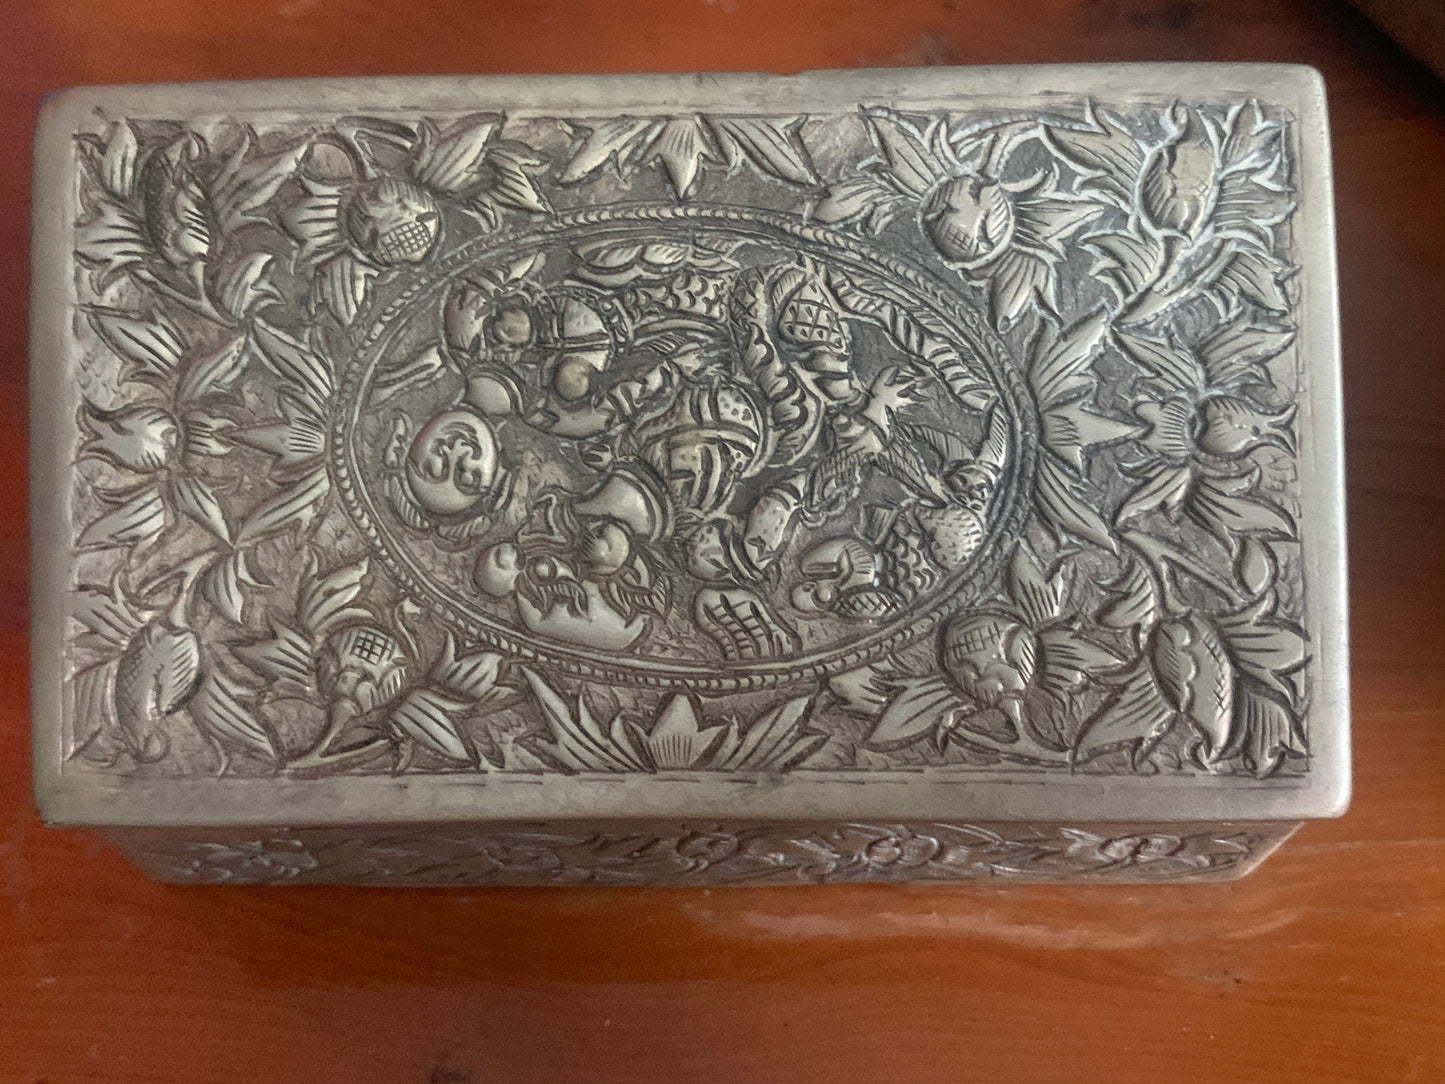 A silver repousse box